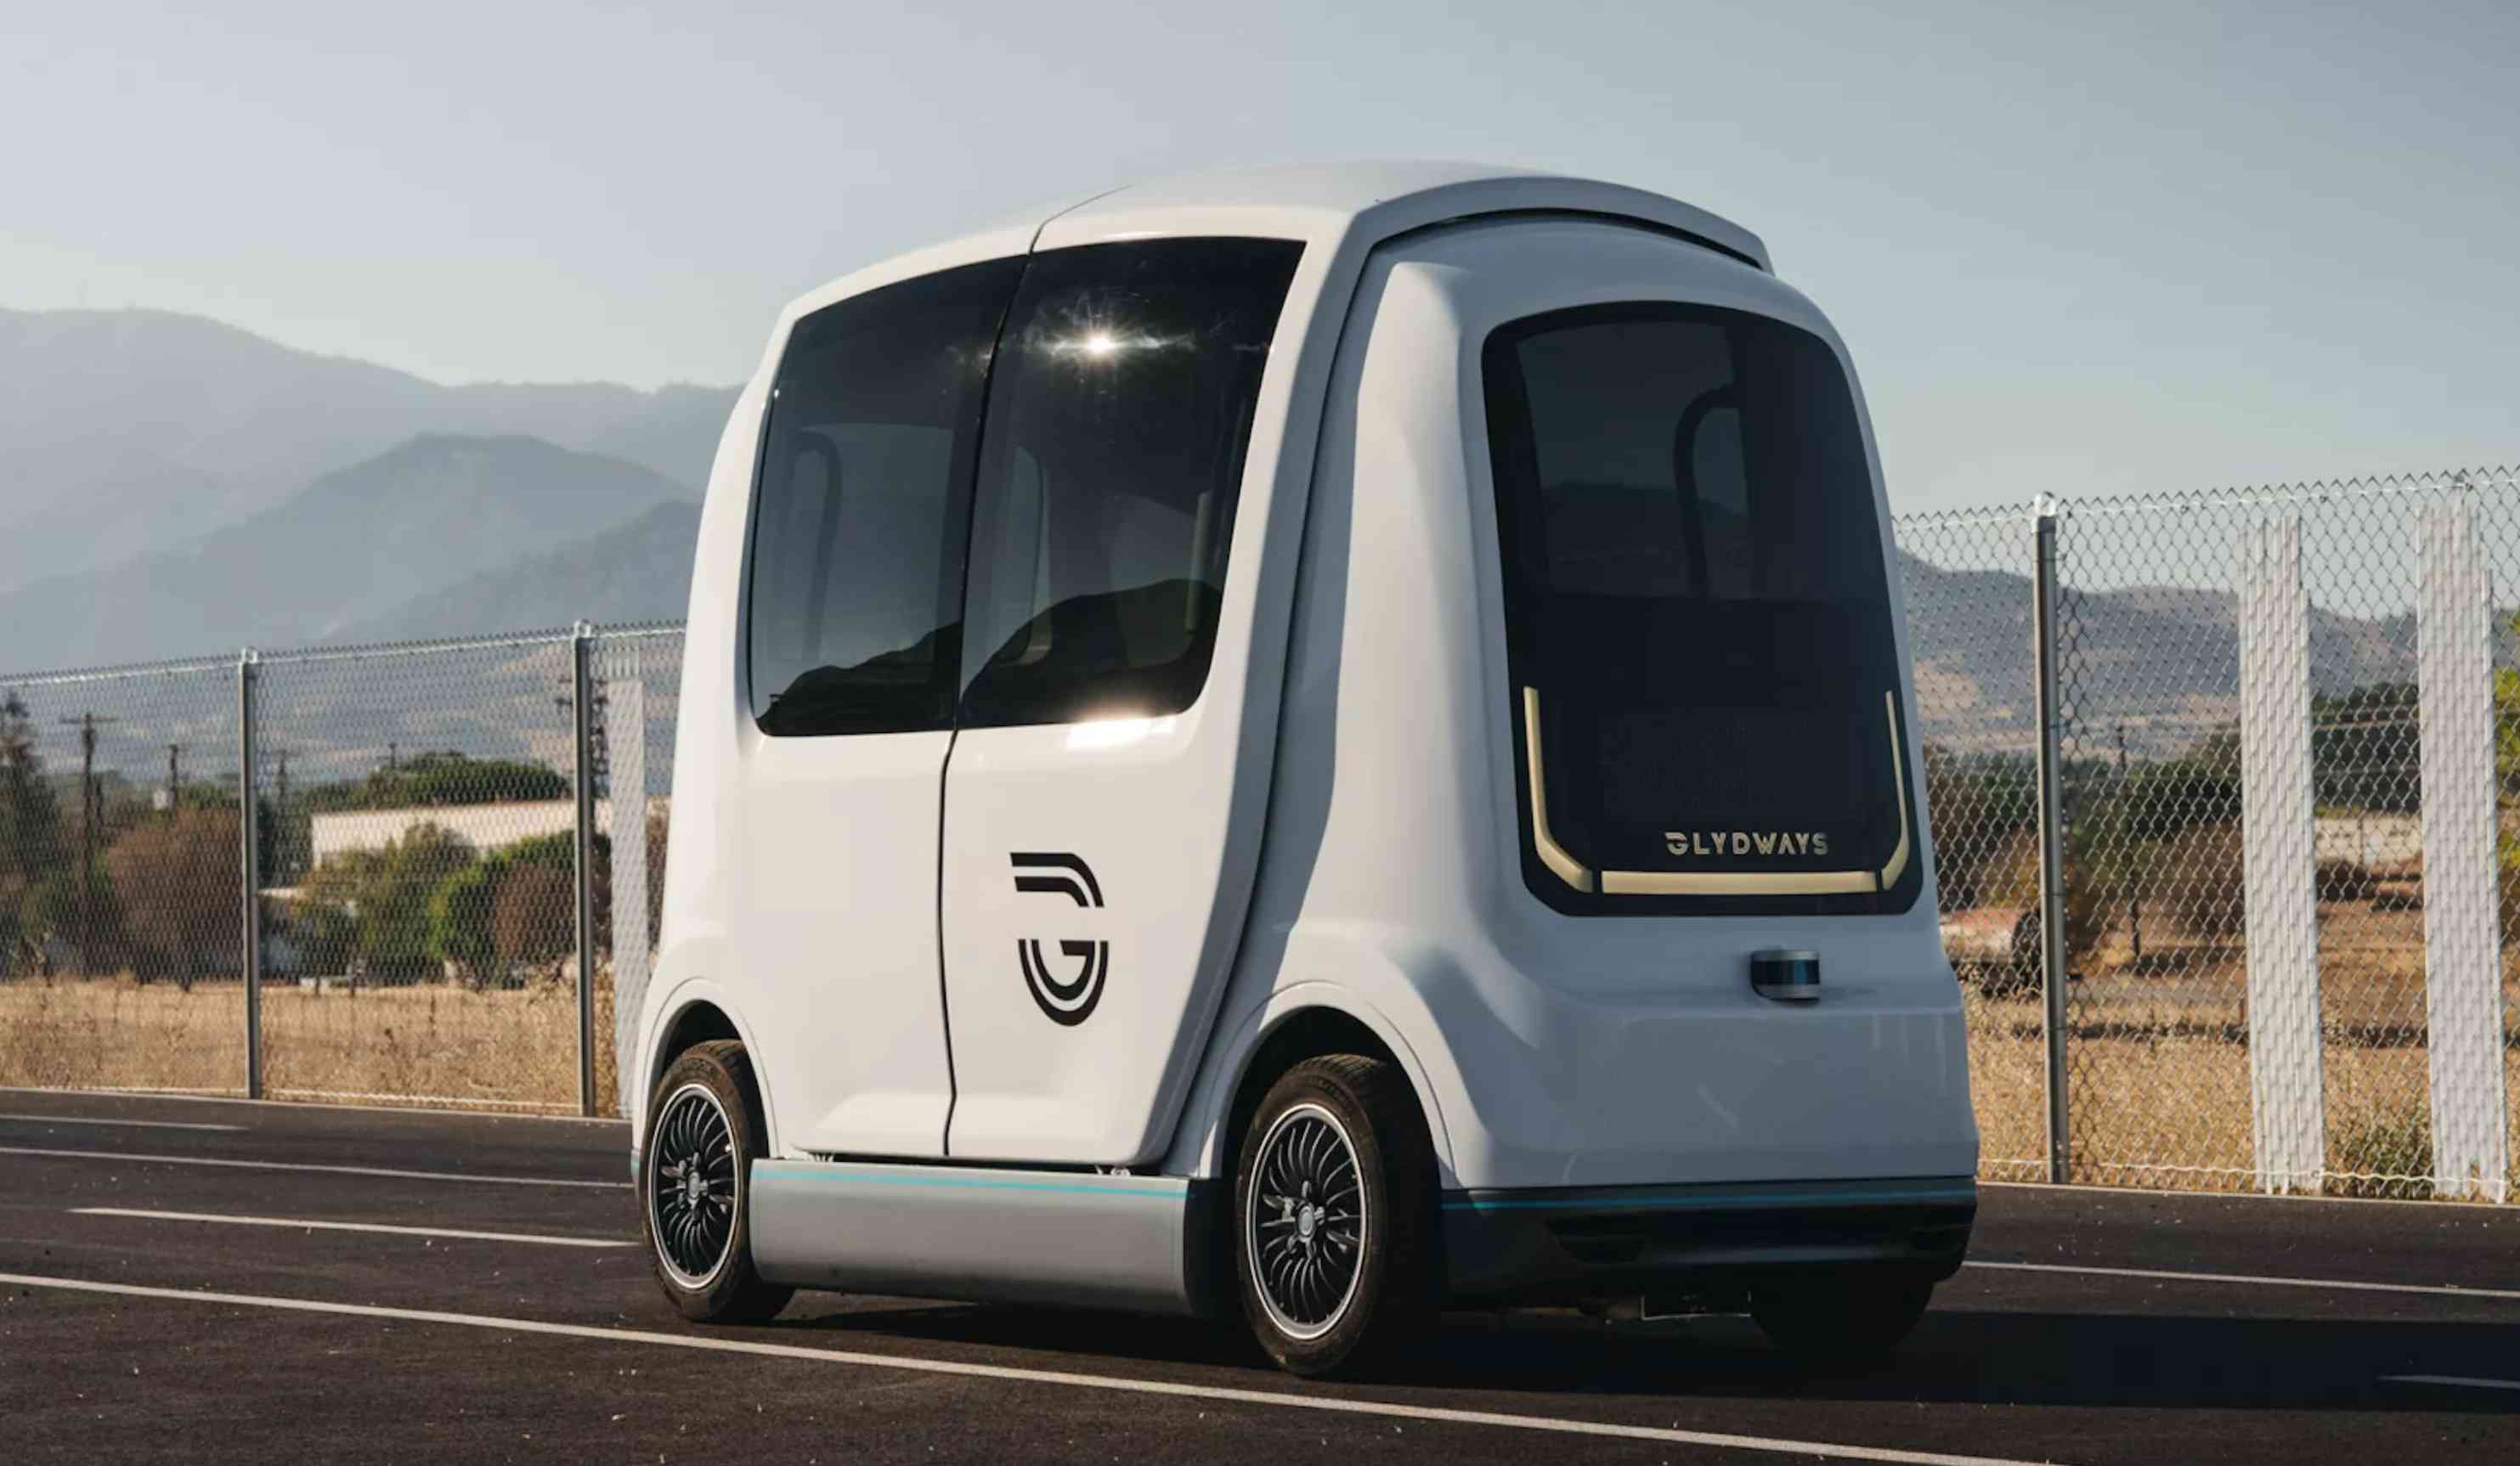 美國第一套膠囊公車自駕系統 預計2028年於San Jose上路